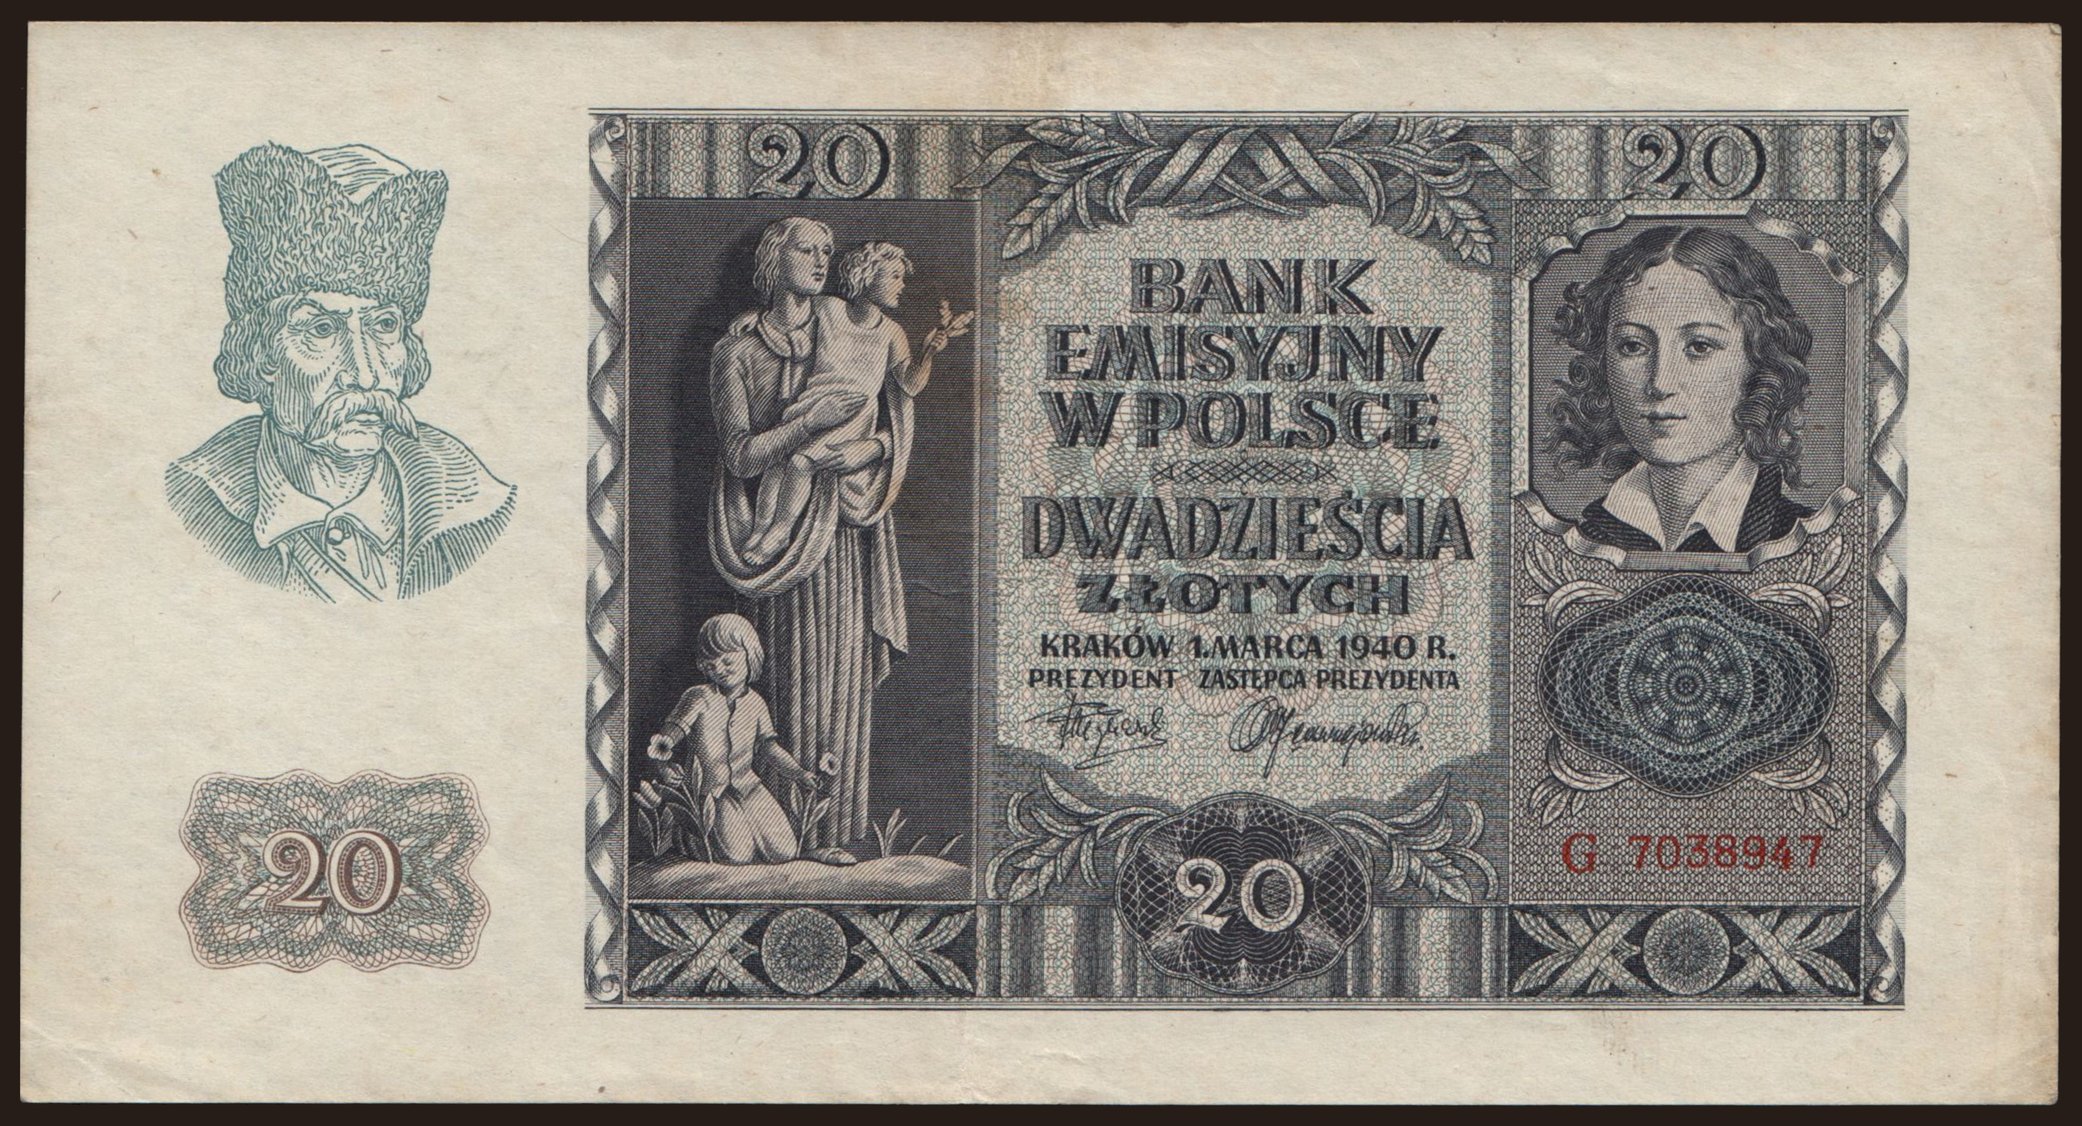 20 zlotych, 1940